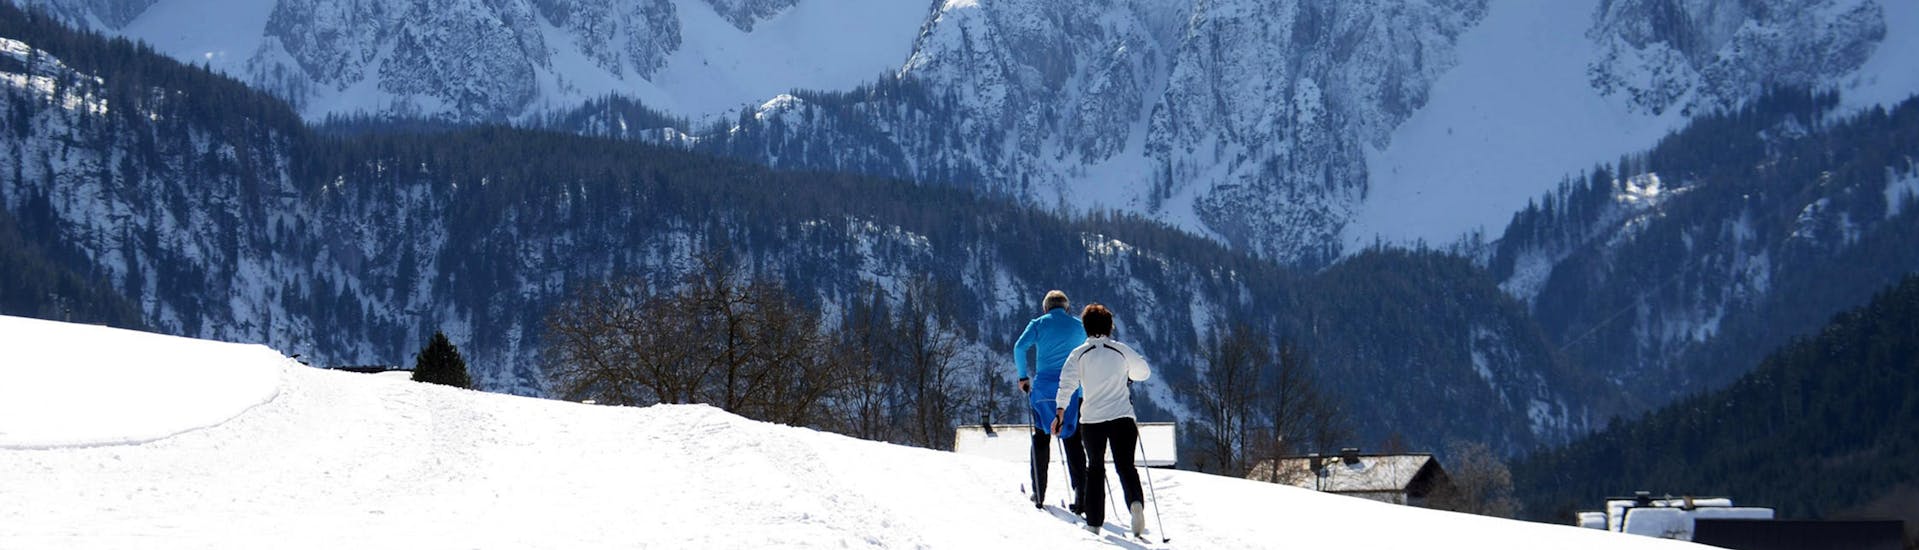 Ausblick auf die sonnige Berglandschaft beim Skifahren lernen mit den Skischulen in Gosau.